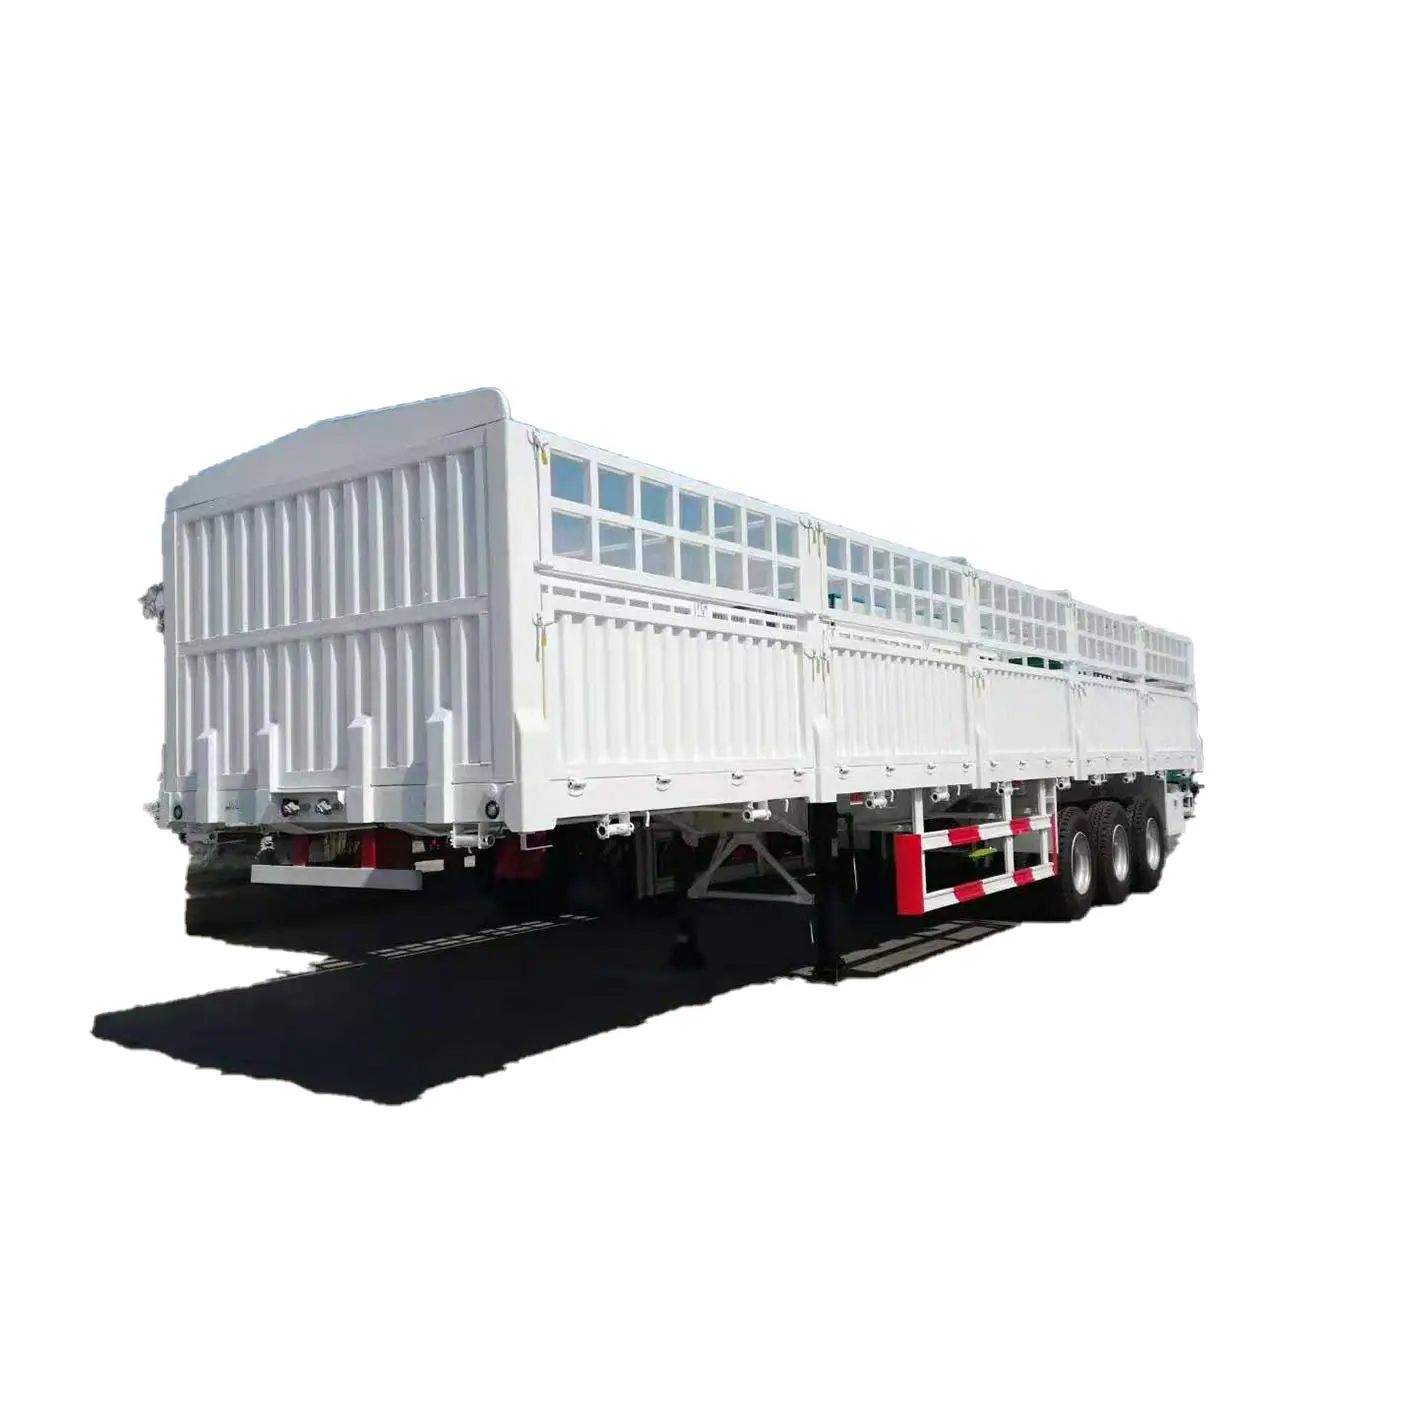 4 المحور 80 طن الصين الصانع ناقل البضائع الماشية النقل السياج شبه مقطورة مستودع الحظيرة المقطورات